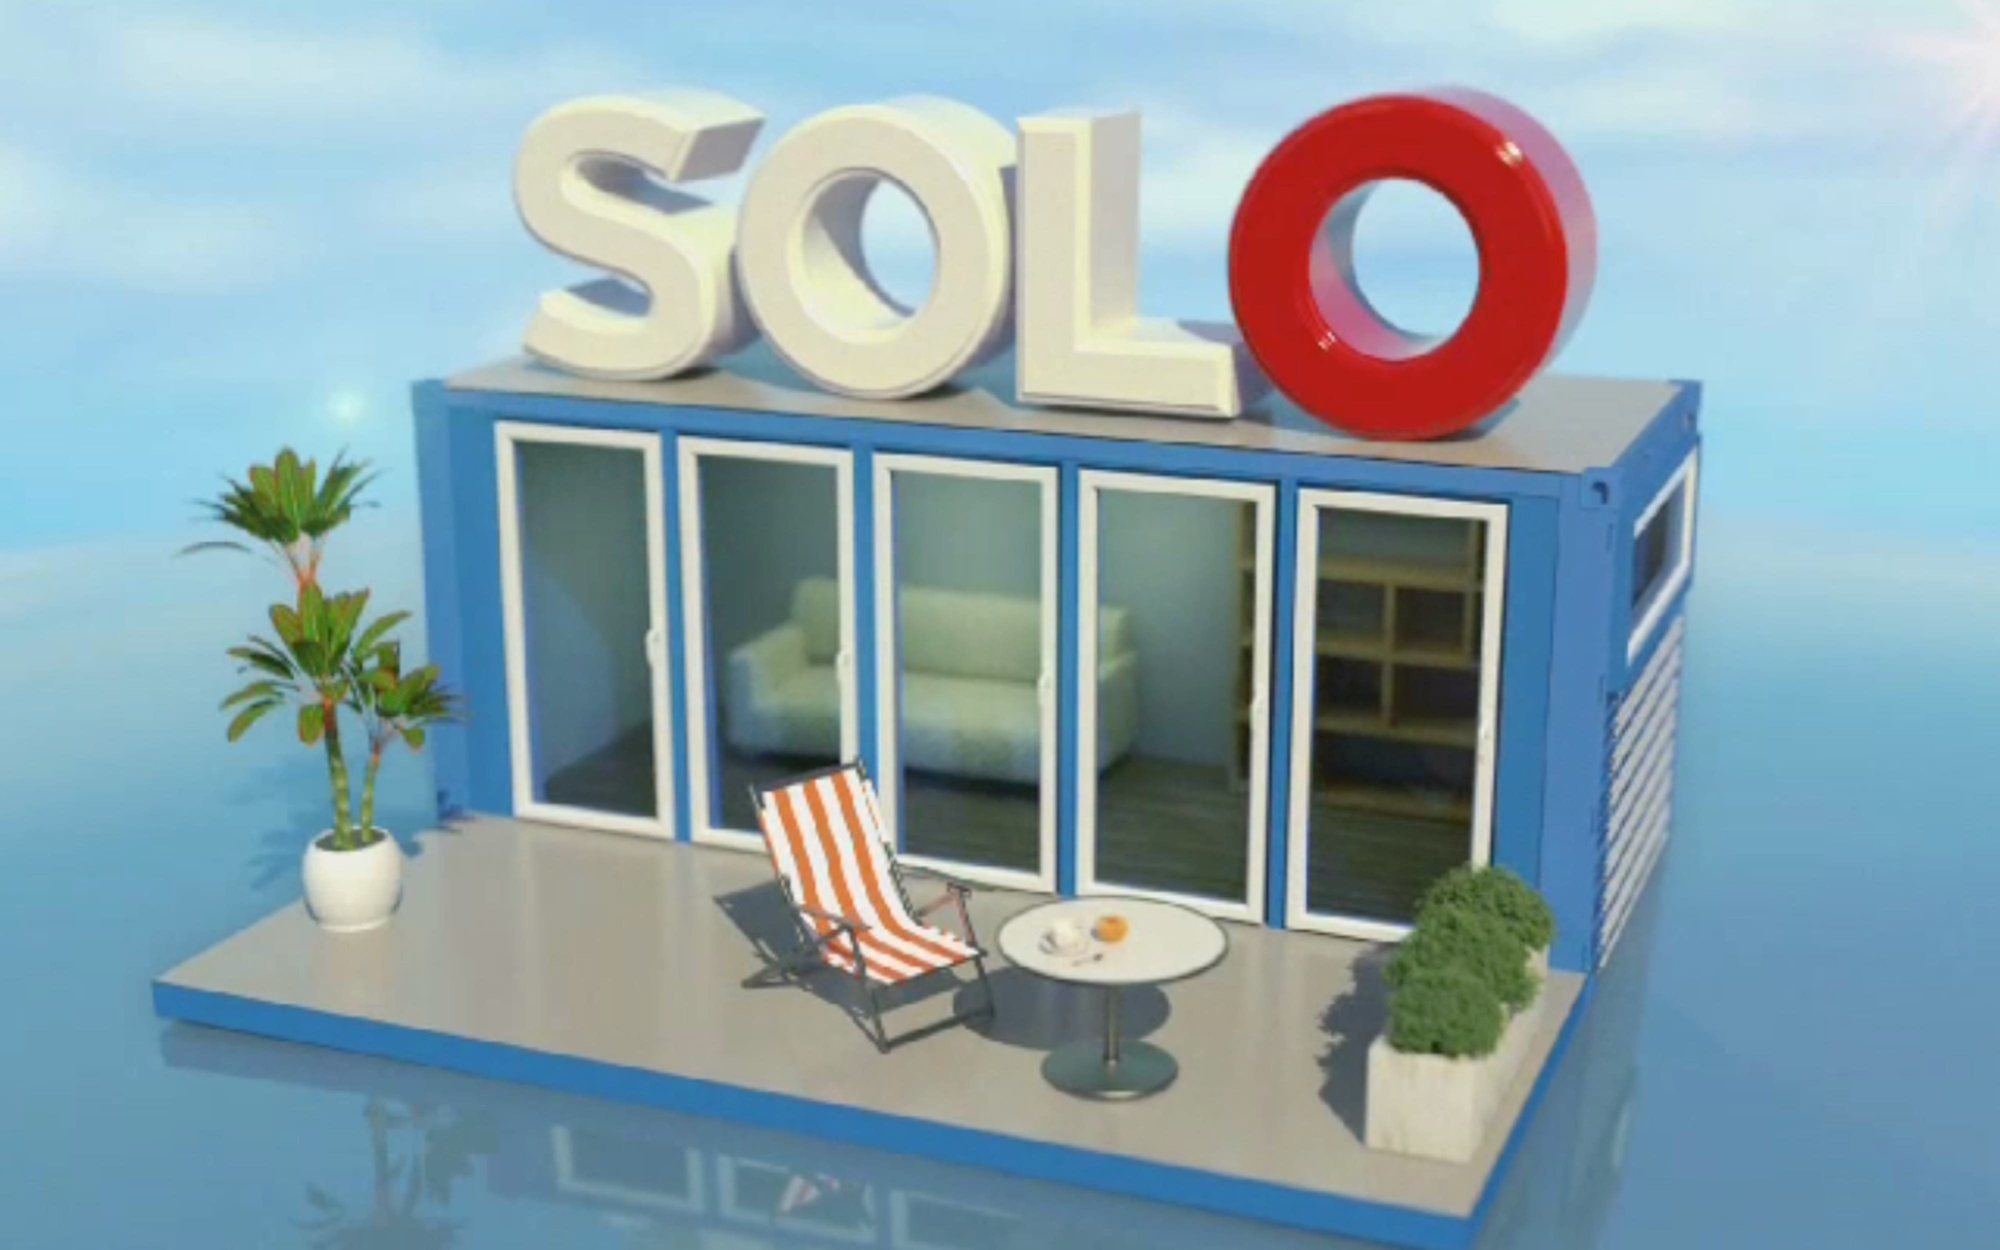 'Sola/Solo', el nuevo reality de Mitele Plus, muestra la primera imagen de su casa